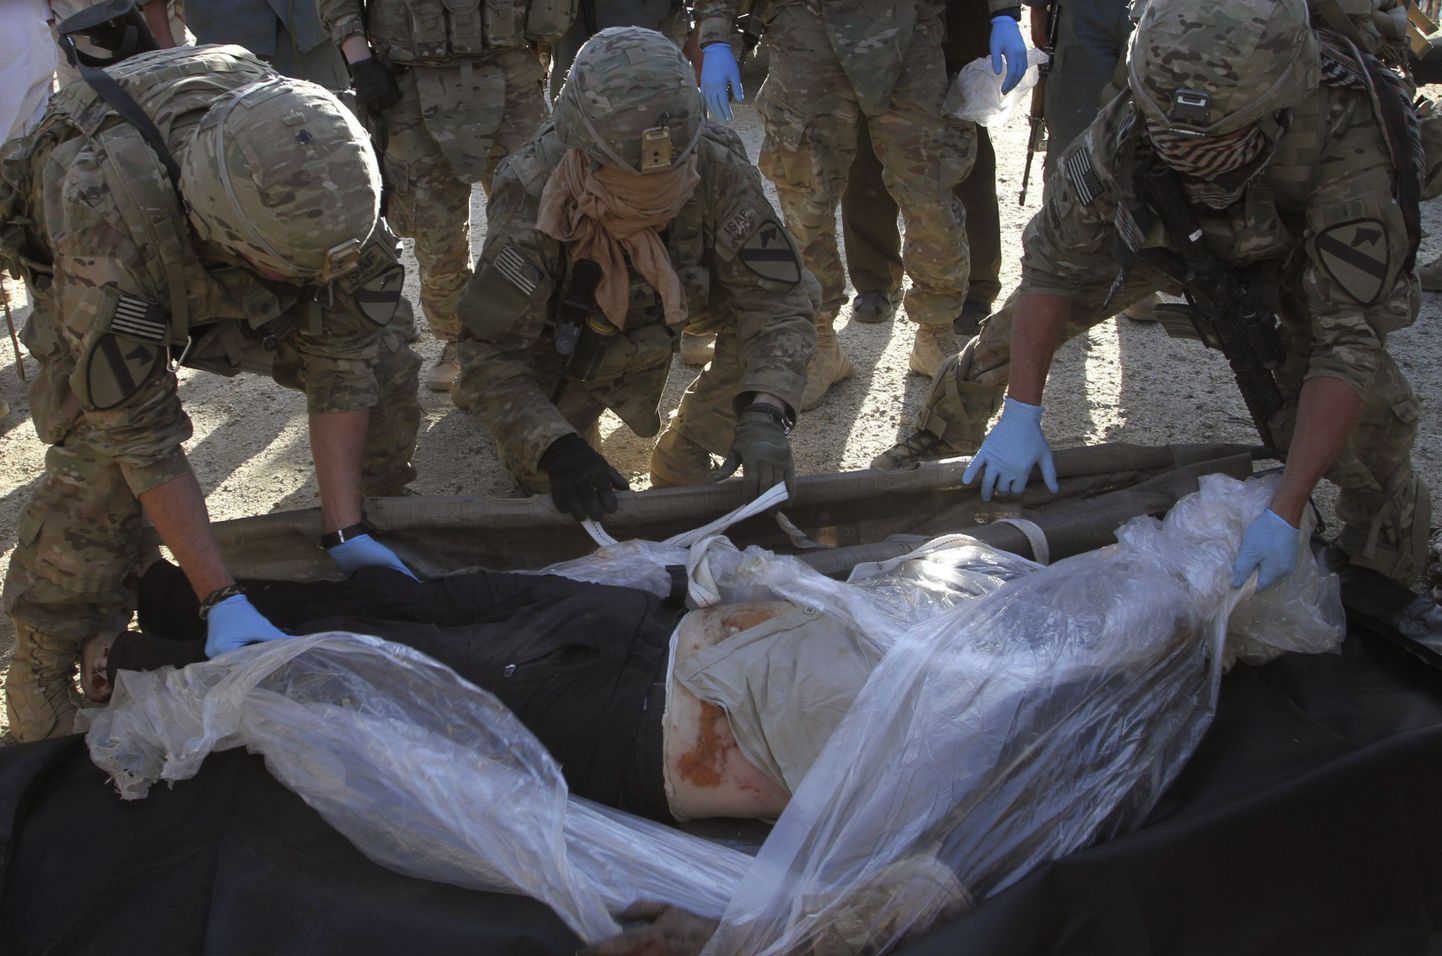 NATO sõdurid 2011. aastal Kabulis tapetud GIZi töötajate surnukehadega